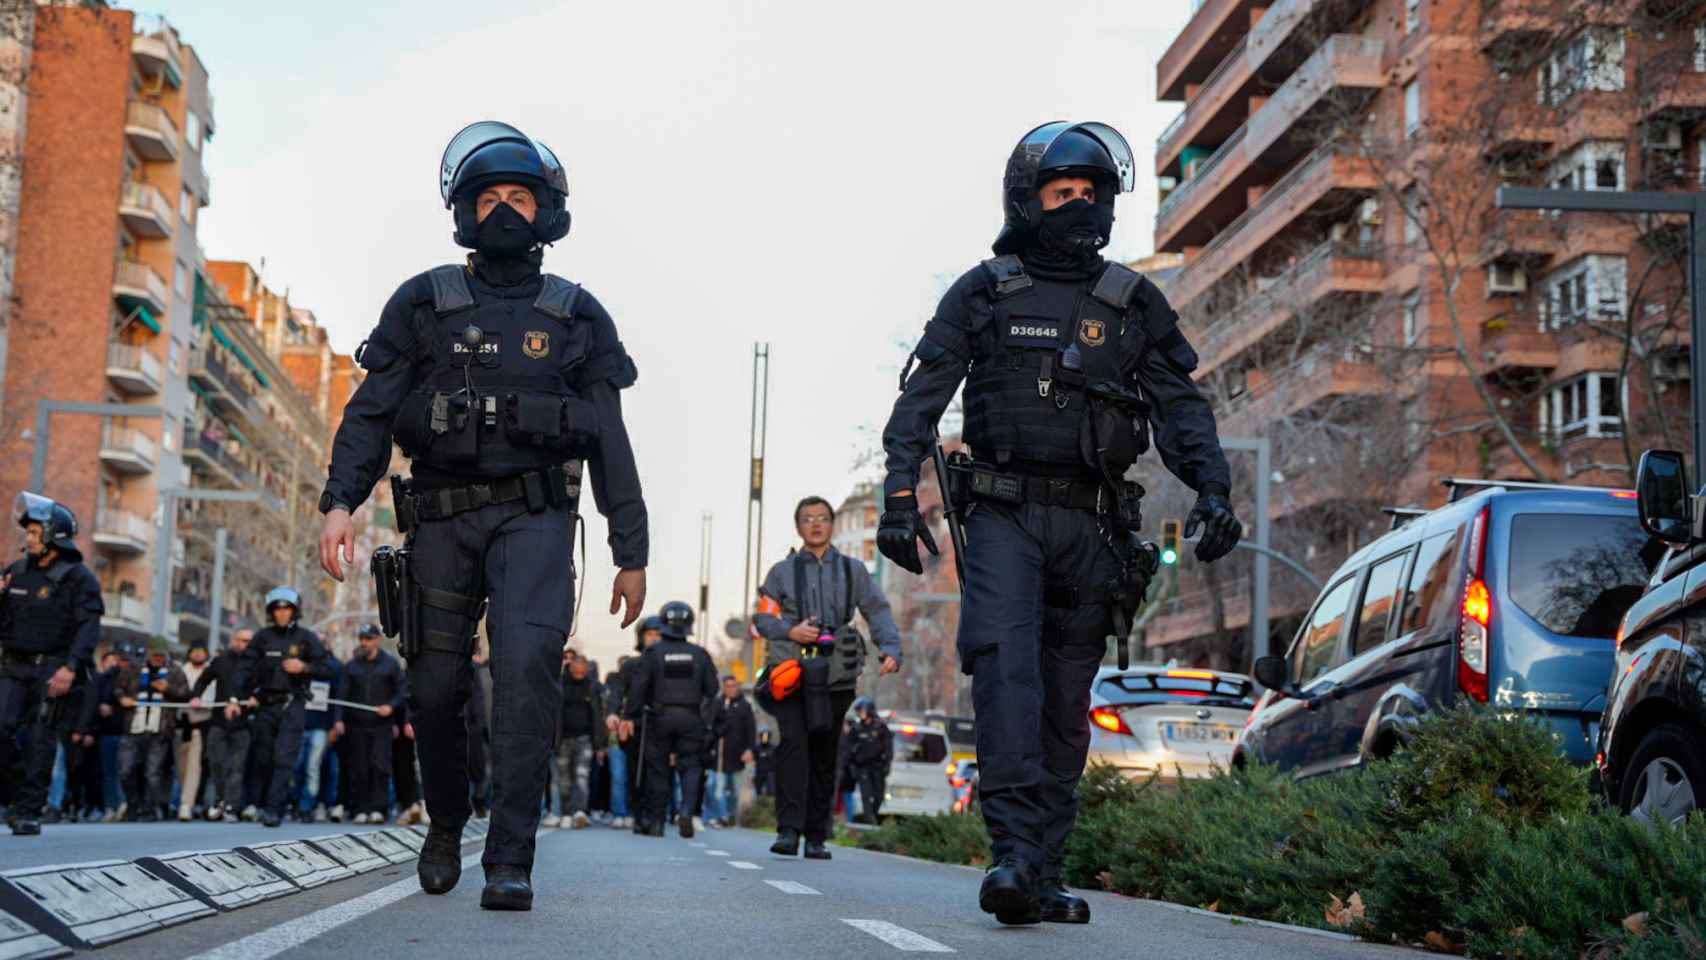 Crónica Global acompaña a los Mossos d'Esquadra durante el dispositivo de seguridad del Barça - Nápoles